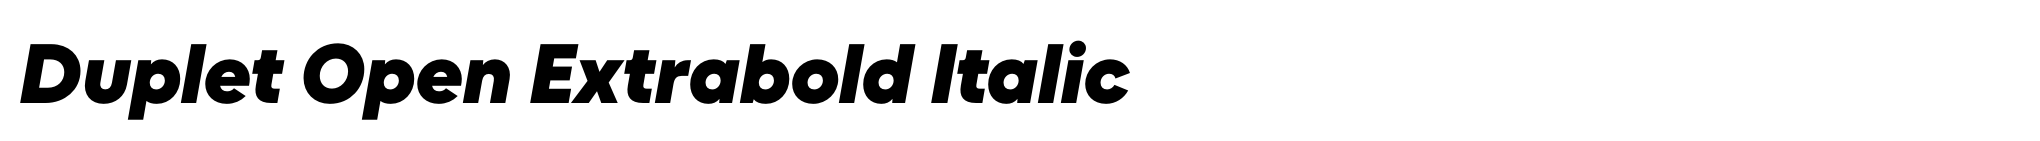 Duplet Open Extrabold Italic image